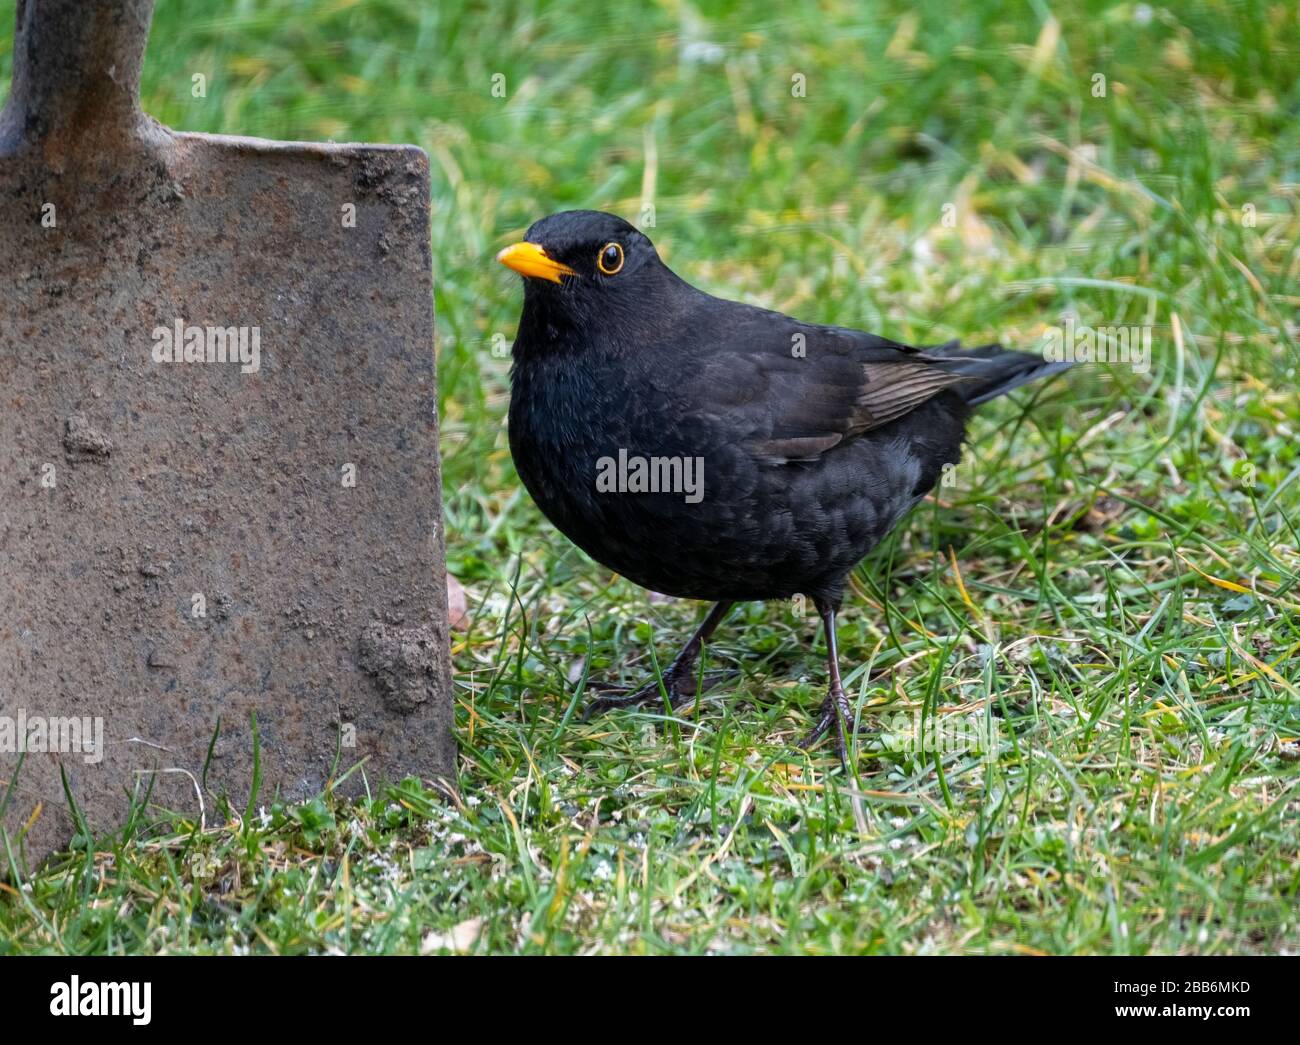 Ein Blackbird wartet neben einem Gartenspaten auf Essen, Schottland. Stockfoto